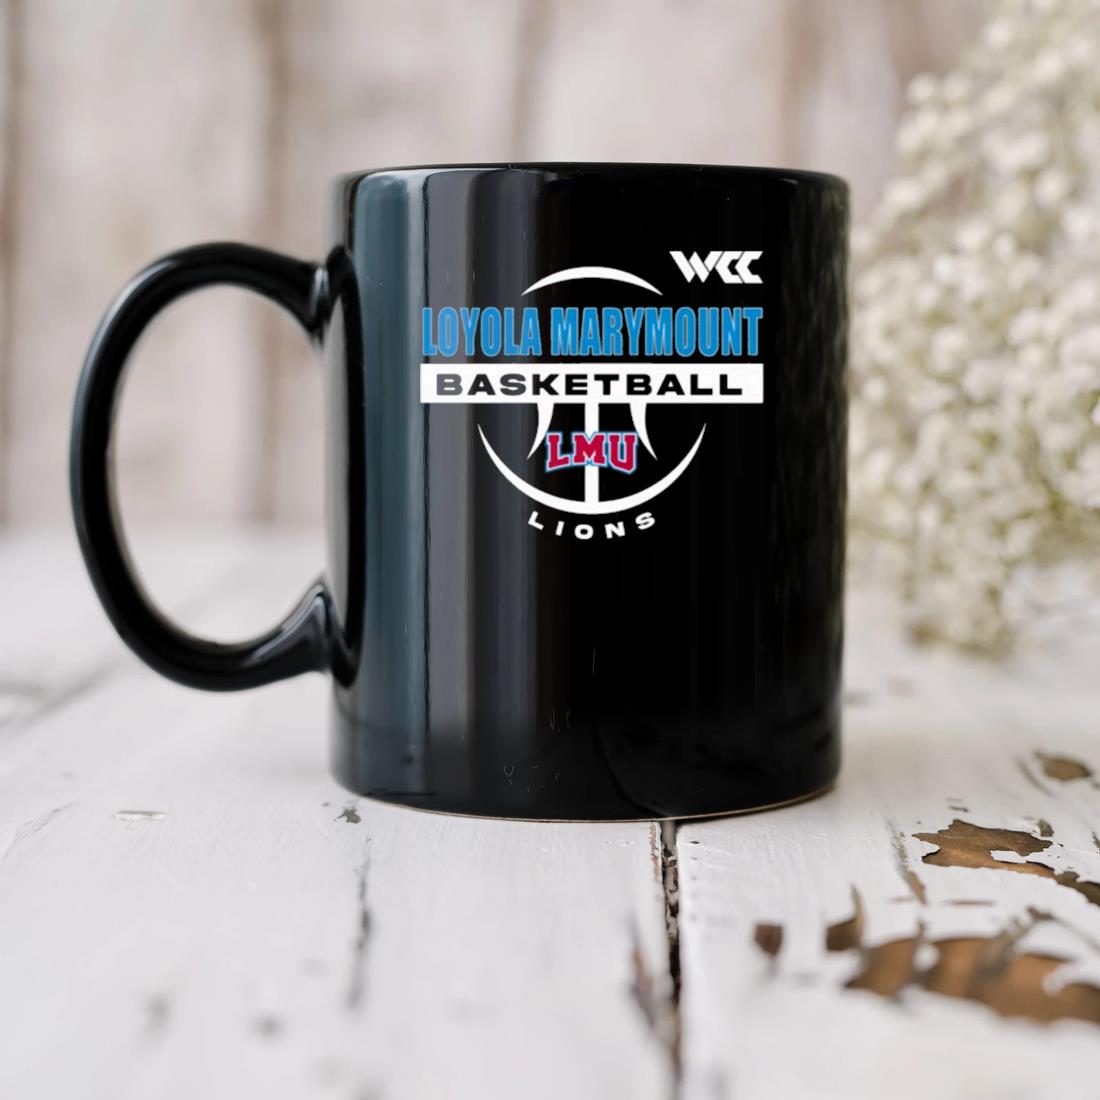 Wcc Gear Shop Loyola Marymount Generic Basketball Mug biu